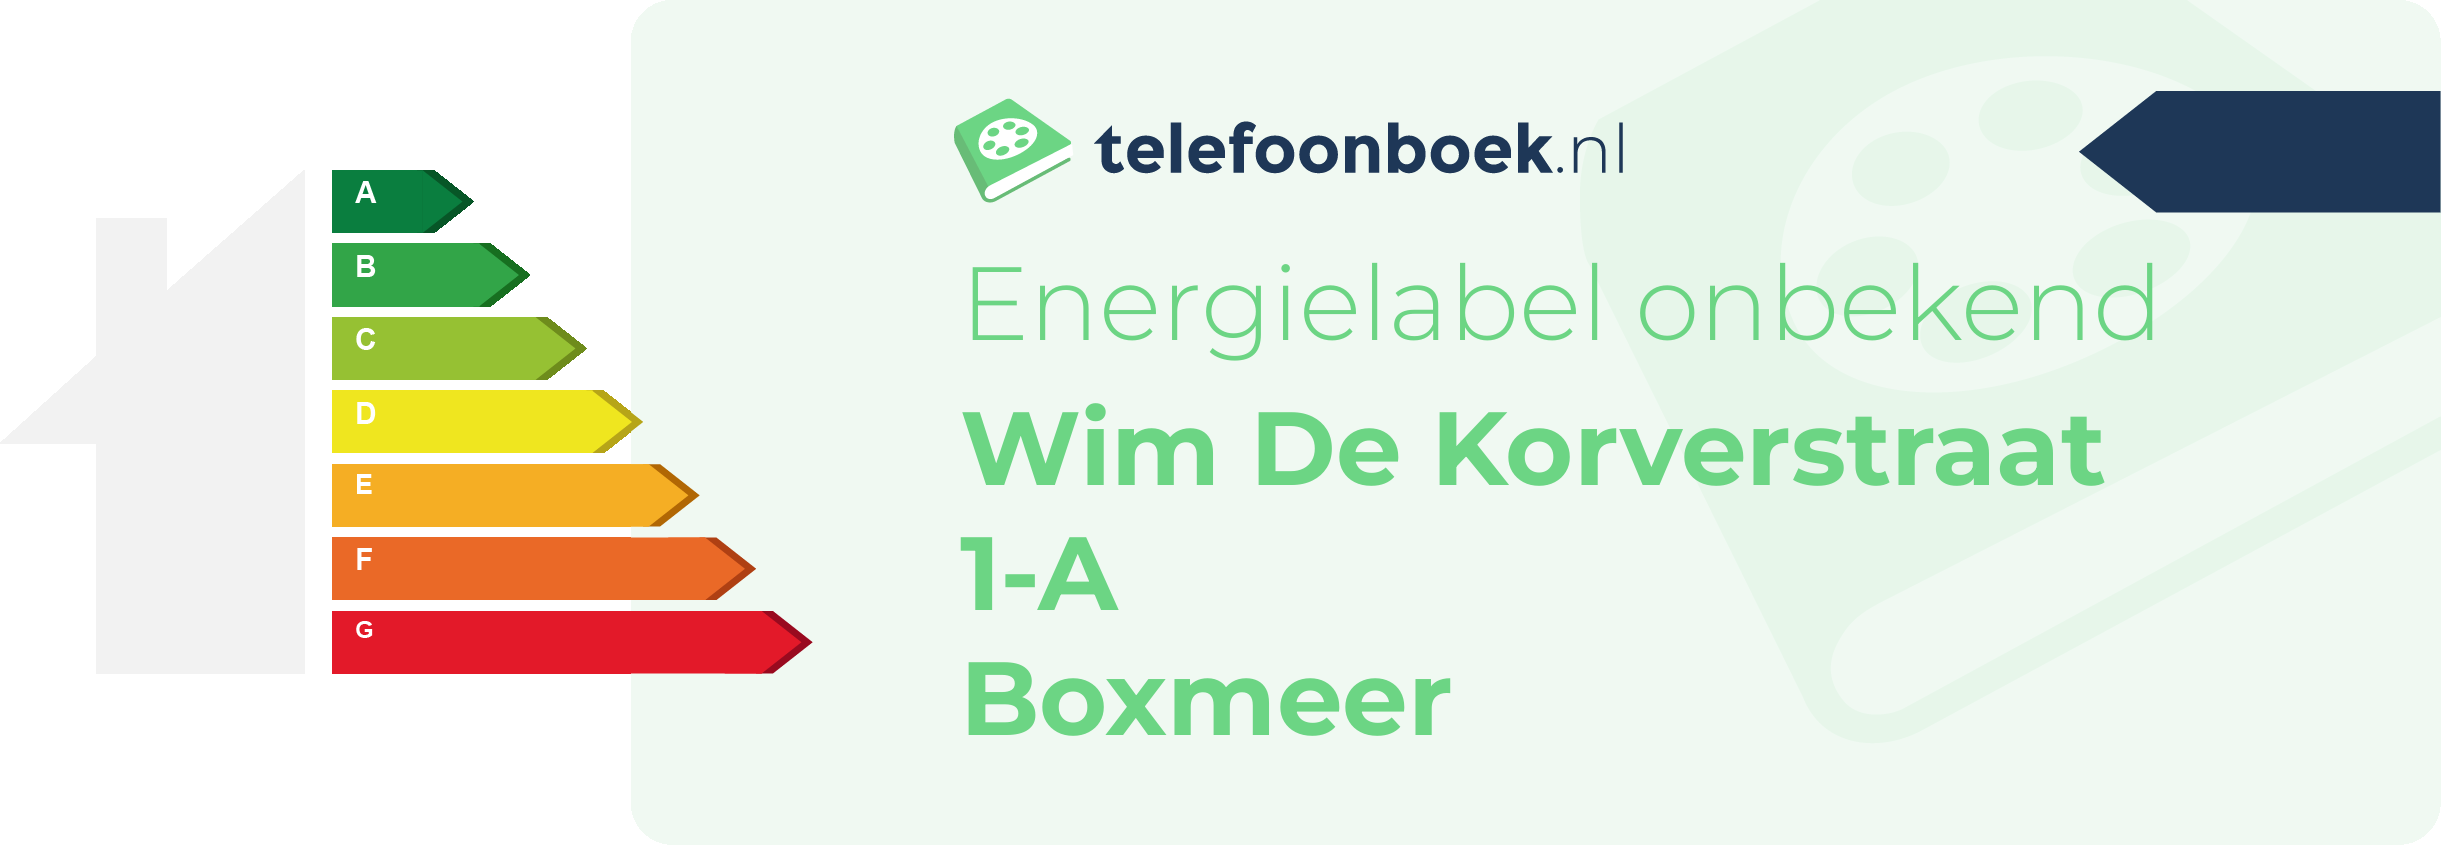 Energielabel Wim De Korverstraat 1-A Boxmeer